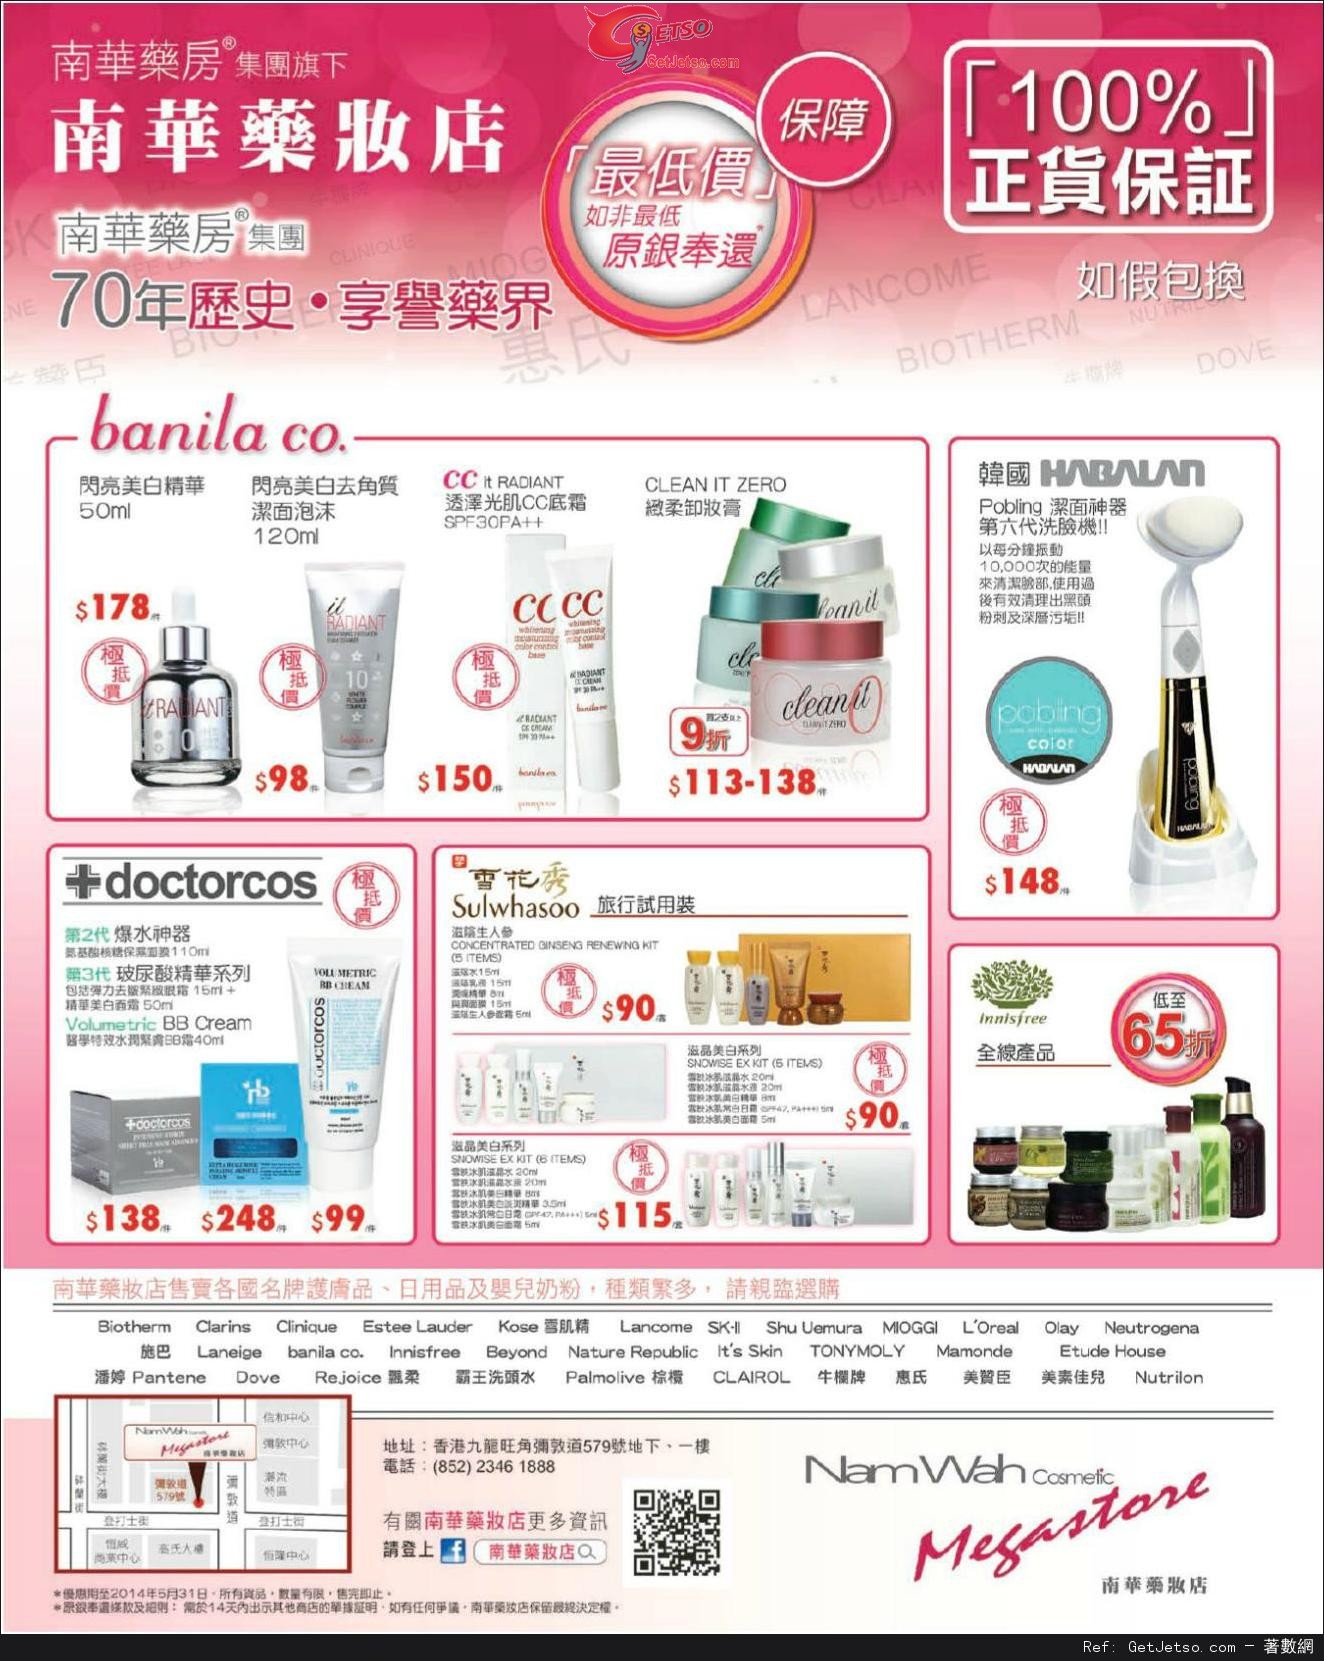 南華藥妝店護膚產品購買優惠(至14年5月31日)圖片1